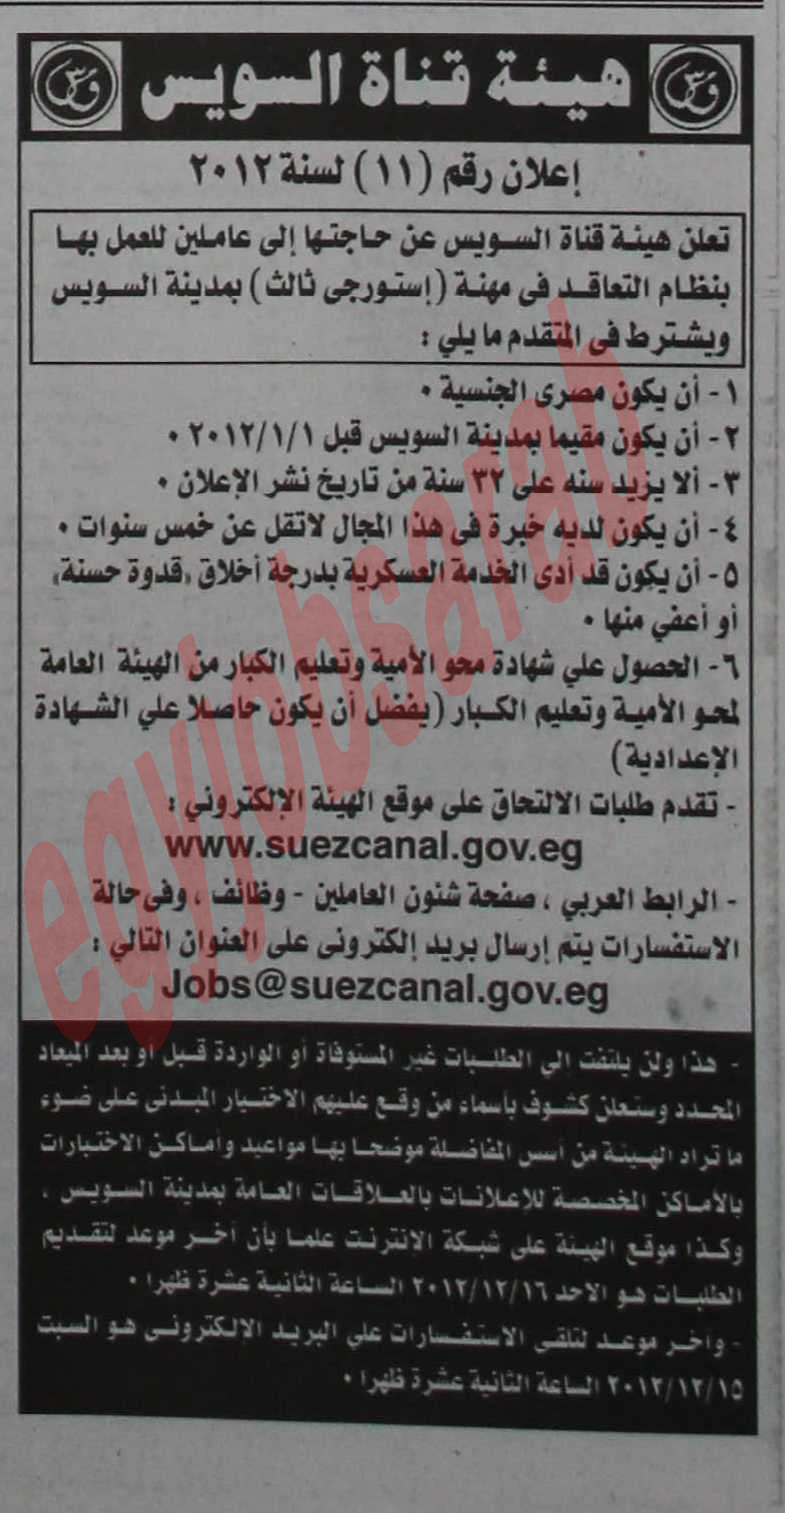 وظائف جريدة الاهرام الاحد 2 ديسمبر 2012 - وظائف مصر %D8%A7%D9%84%D8%A7%D9%87%D8%B1%D8%A7%D9%85+1